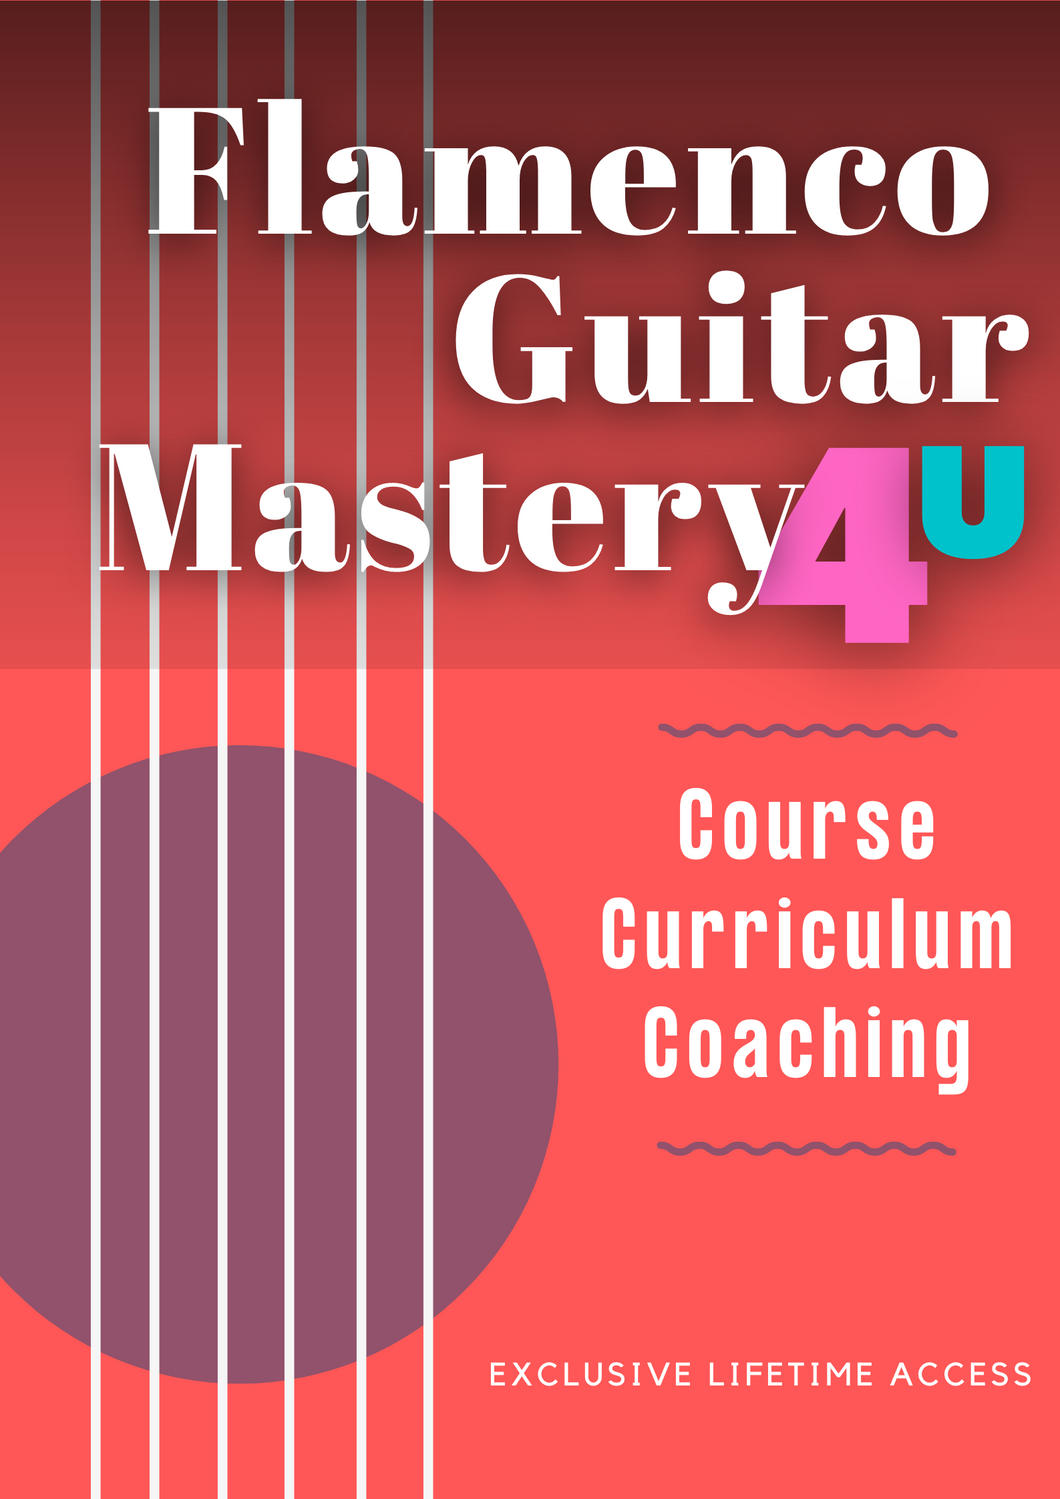 Flamenco Guitar Mastery 4U™